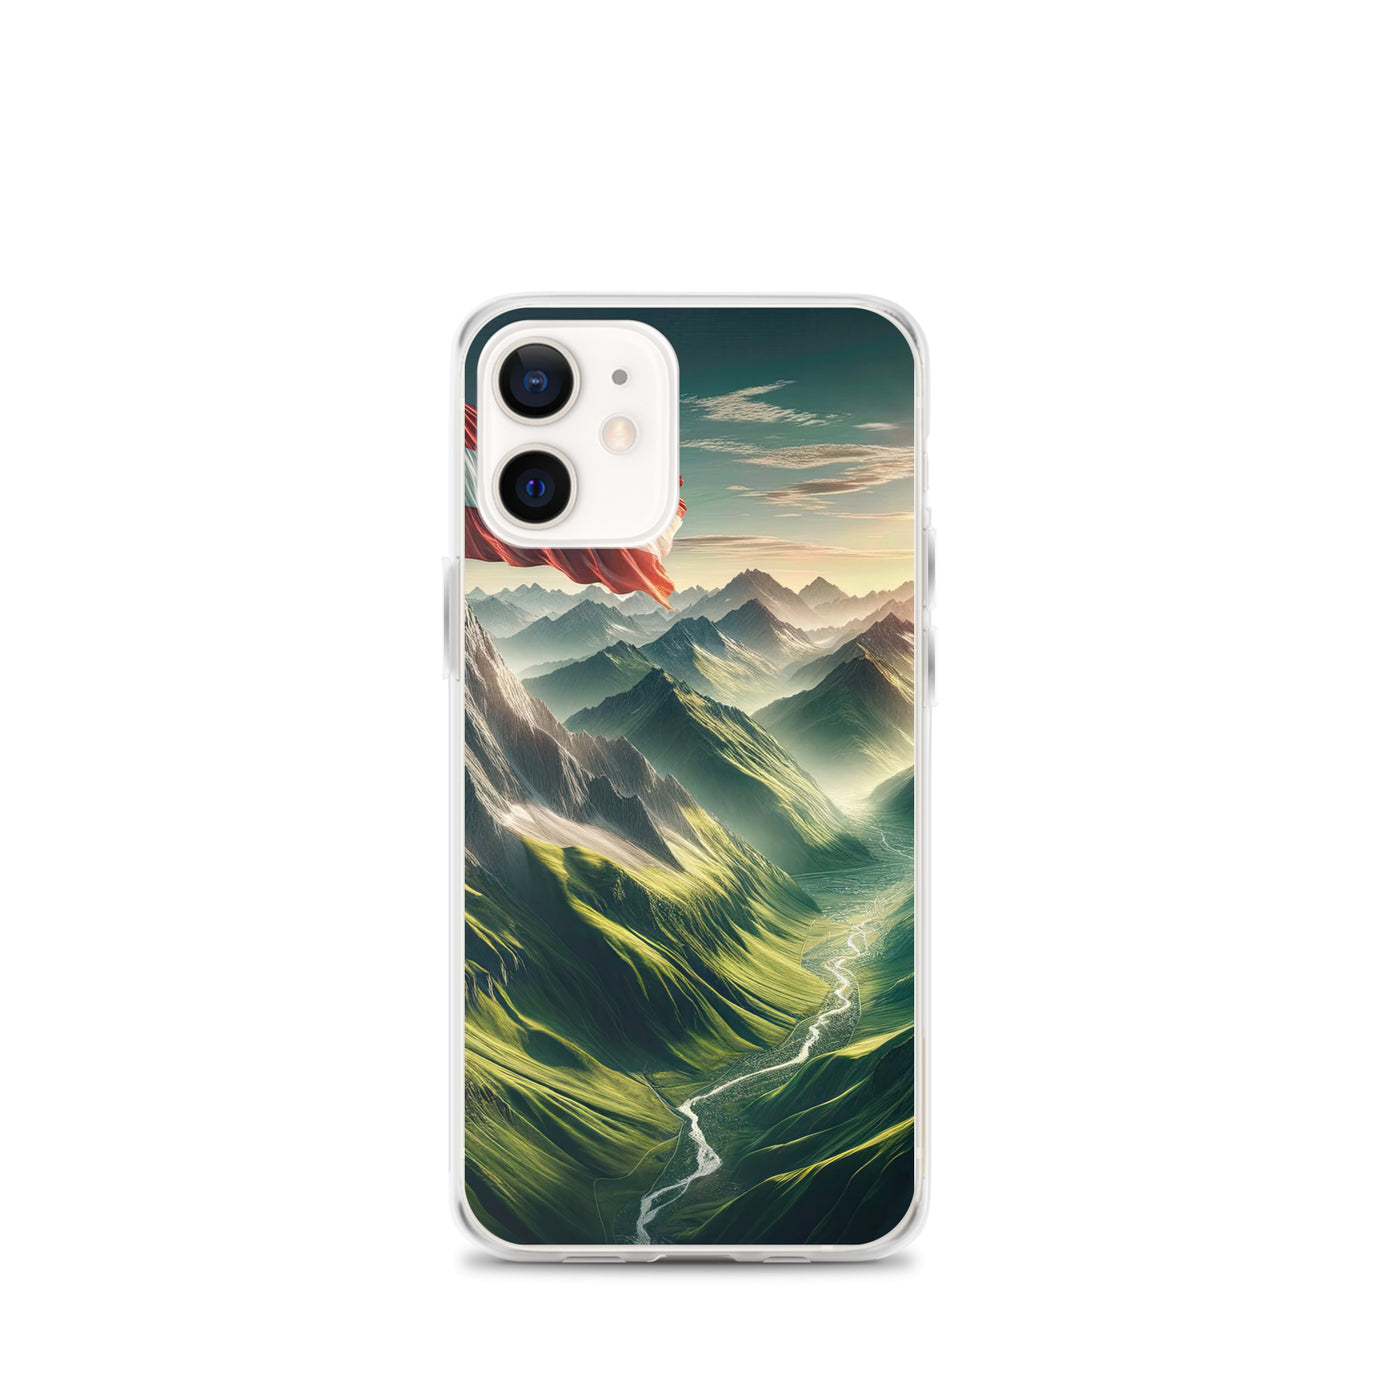 Alpen Gebirge: Fotorealistische Bergfläche mit Österreichischer Flagge - iPhone Schutzhülle (durchsichtig) berge xxx yyy zzz iPhone 12 mini